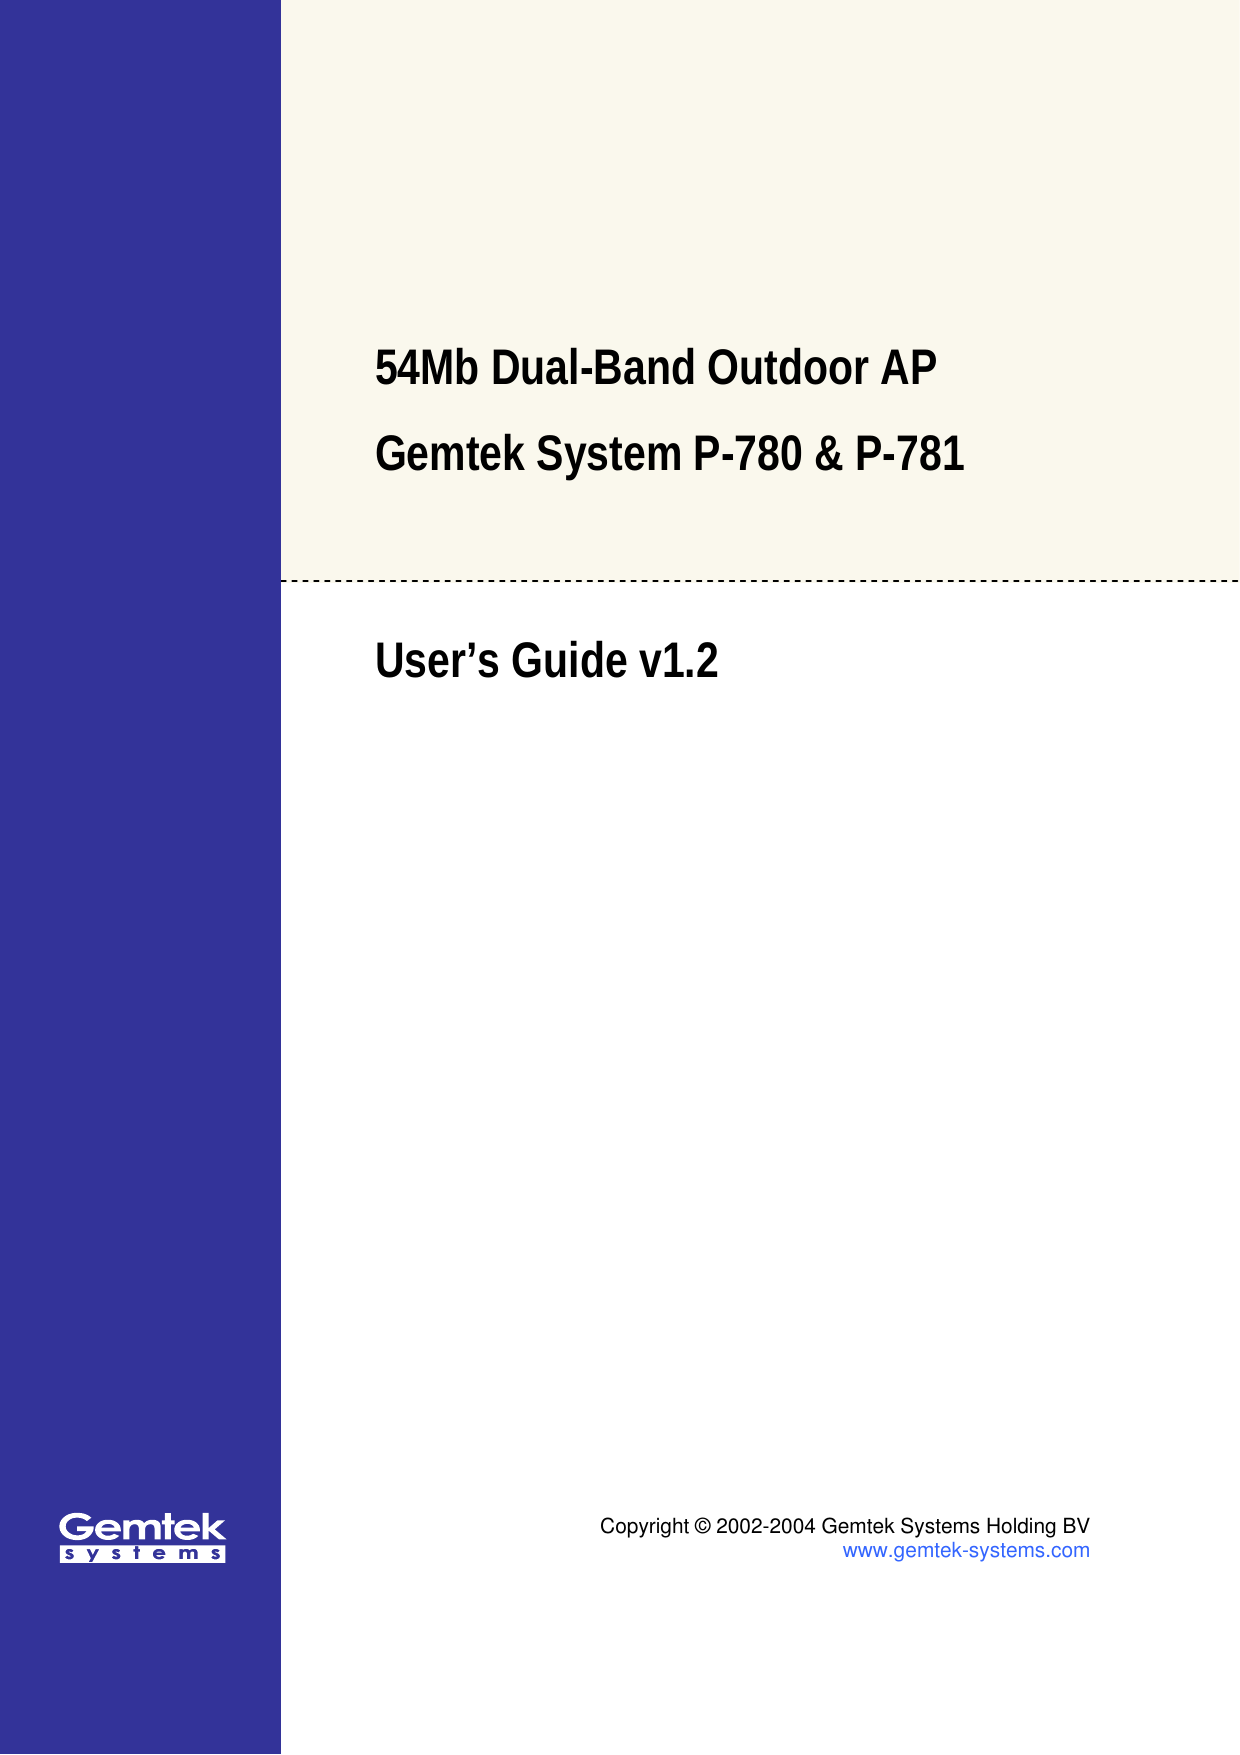   54Mb Dual-Band Outdoor AP  Gemtek System P-780 &amp; P-781  User’s Guide v1.2    Copyright © 2002-2004 Gemtek Systems Holding BV www.gemtek-systems.com